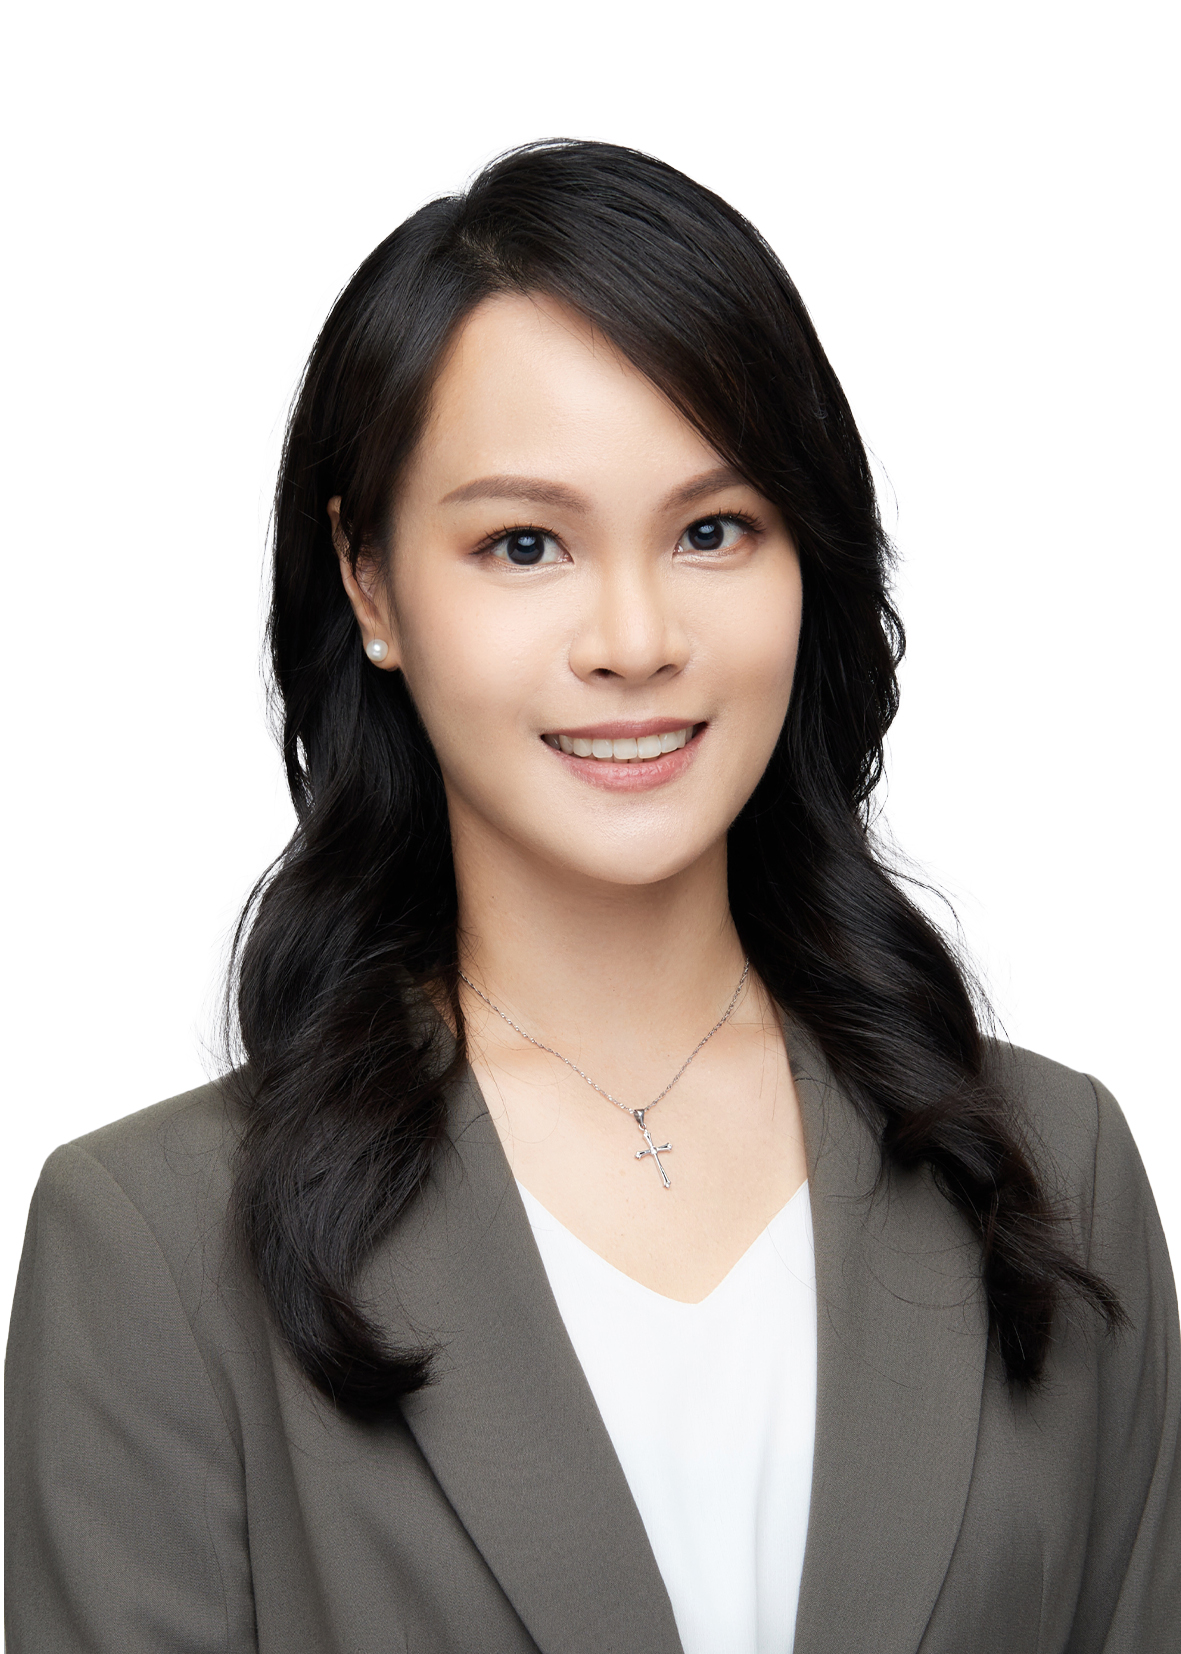 Ms. Yen Pei Shan